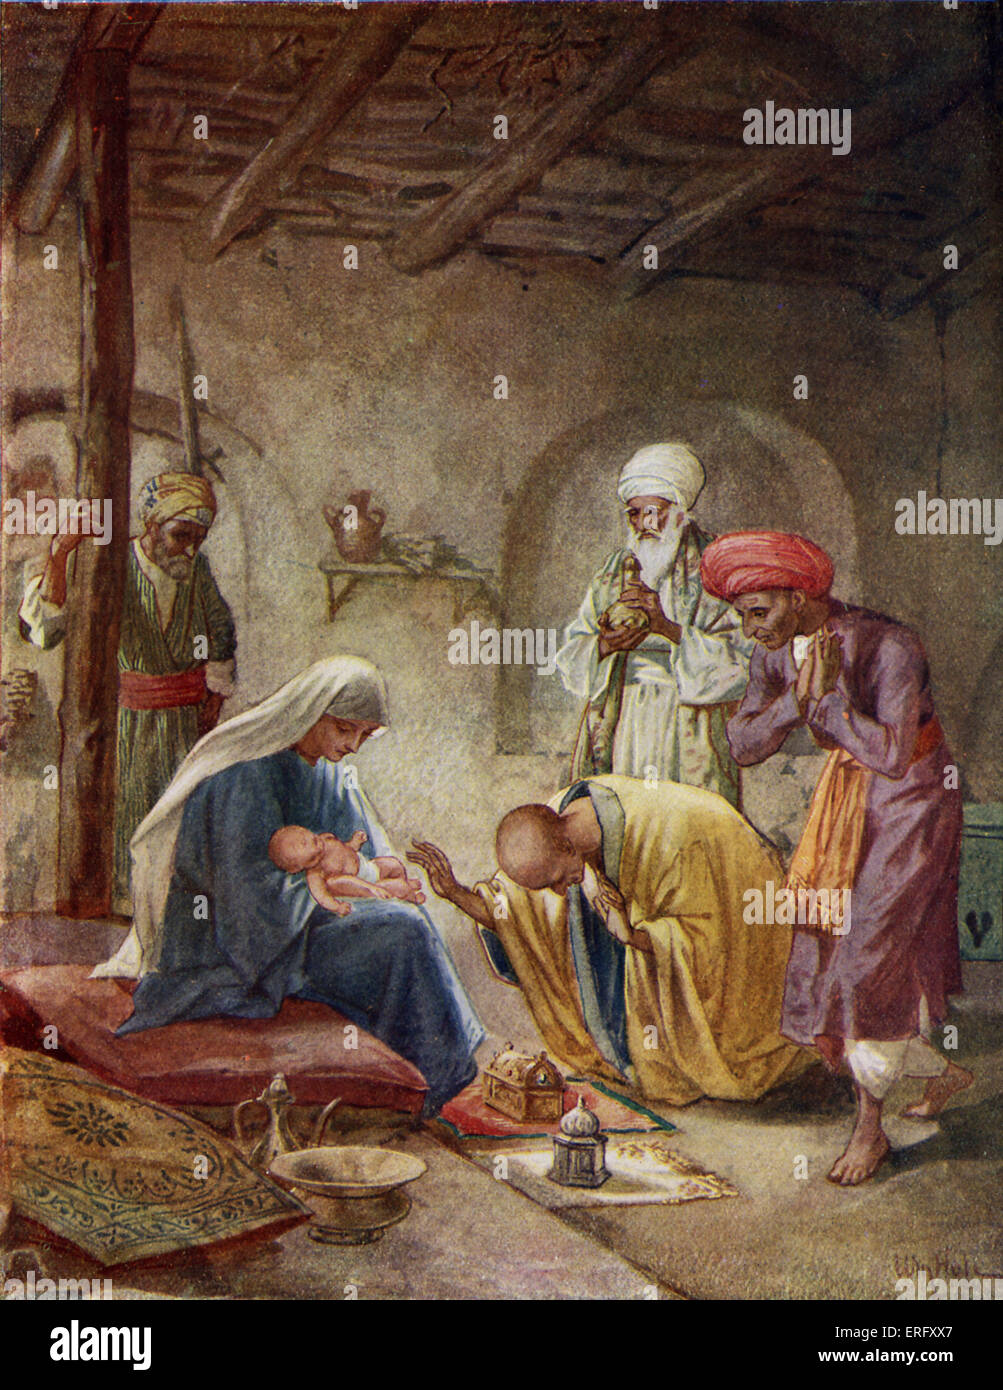 Les Sages visiter le bébé Jésus 'et ils entrèrent dans la maison et virent le petit enfant avec Marie sa mère ; et ils se prosternèrent et l'adorèrent ; ils ouvrirent leurs coffrets et lui a offert de l'or, de la myrrhe et frakincense et'. Matthieu II, 9-11 Banque D'Images